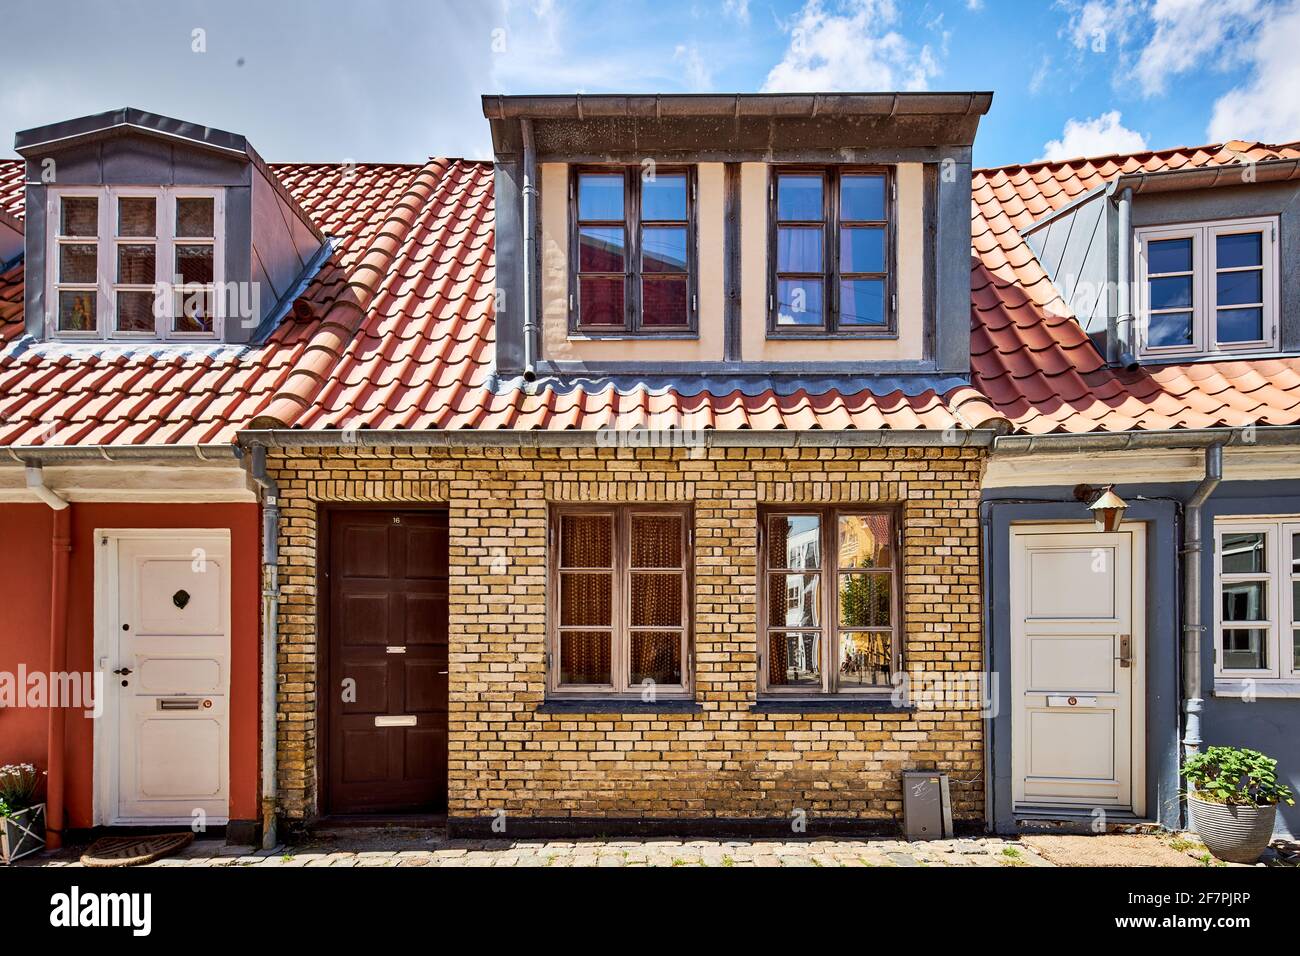 a tiny home in narrow street in denmark Stock Photo